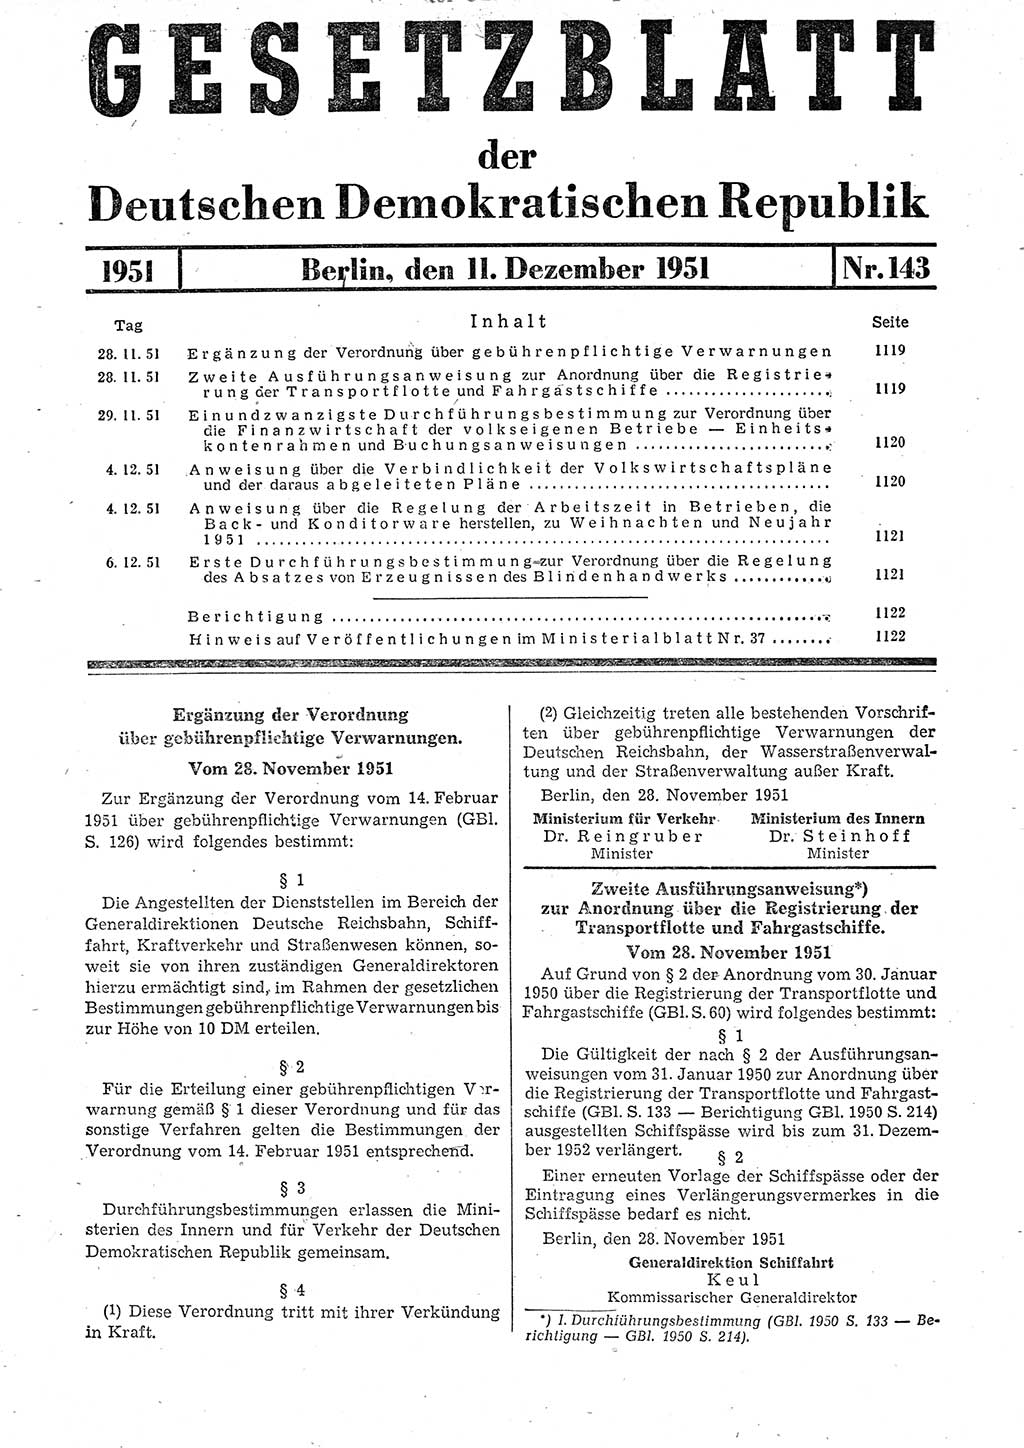 Gesetzblatt (GBl.) der Deutschen Demokratischen Republik (DDR) 1951, Seite 1119 (GBl. DDR 1951, S. 1119)